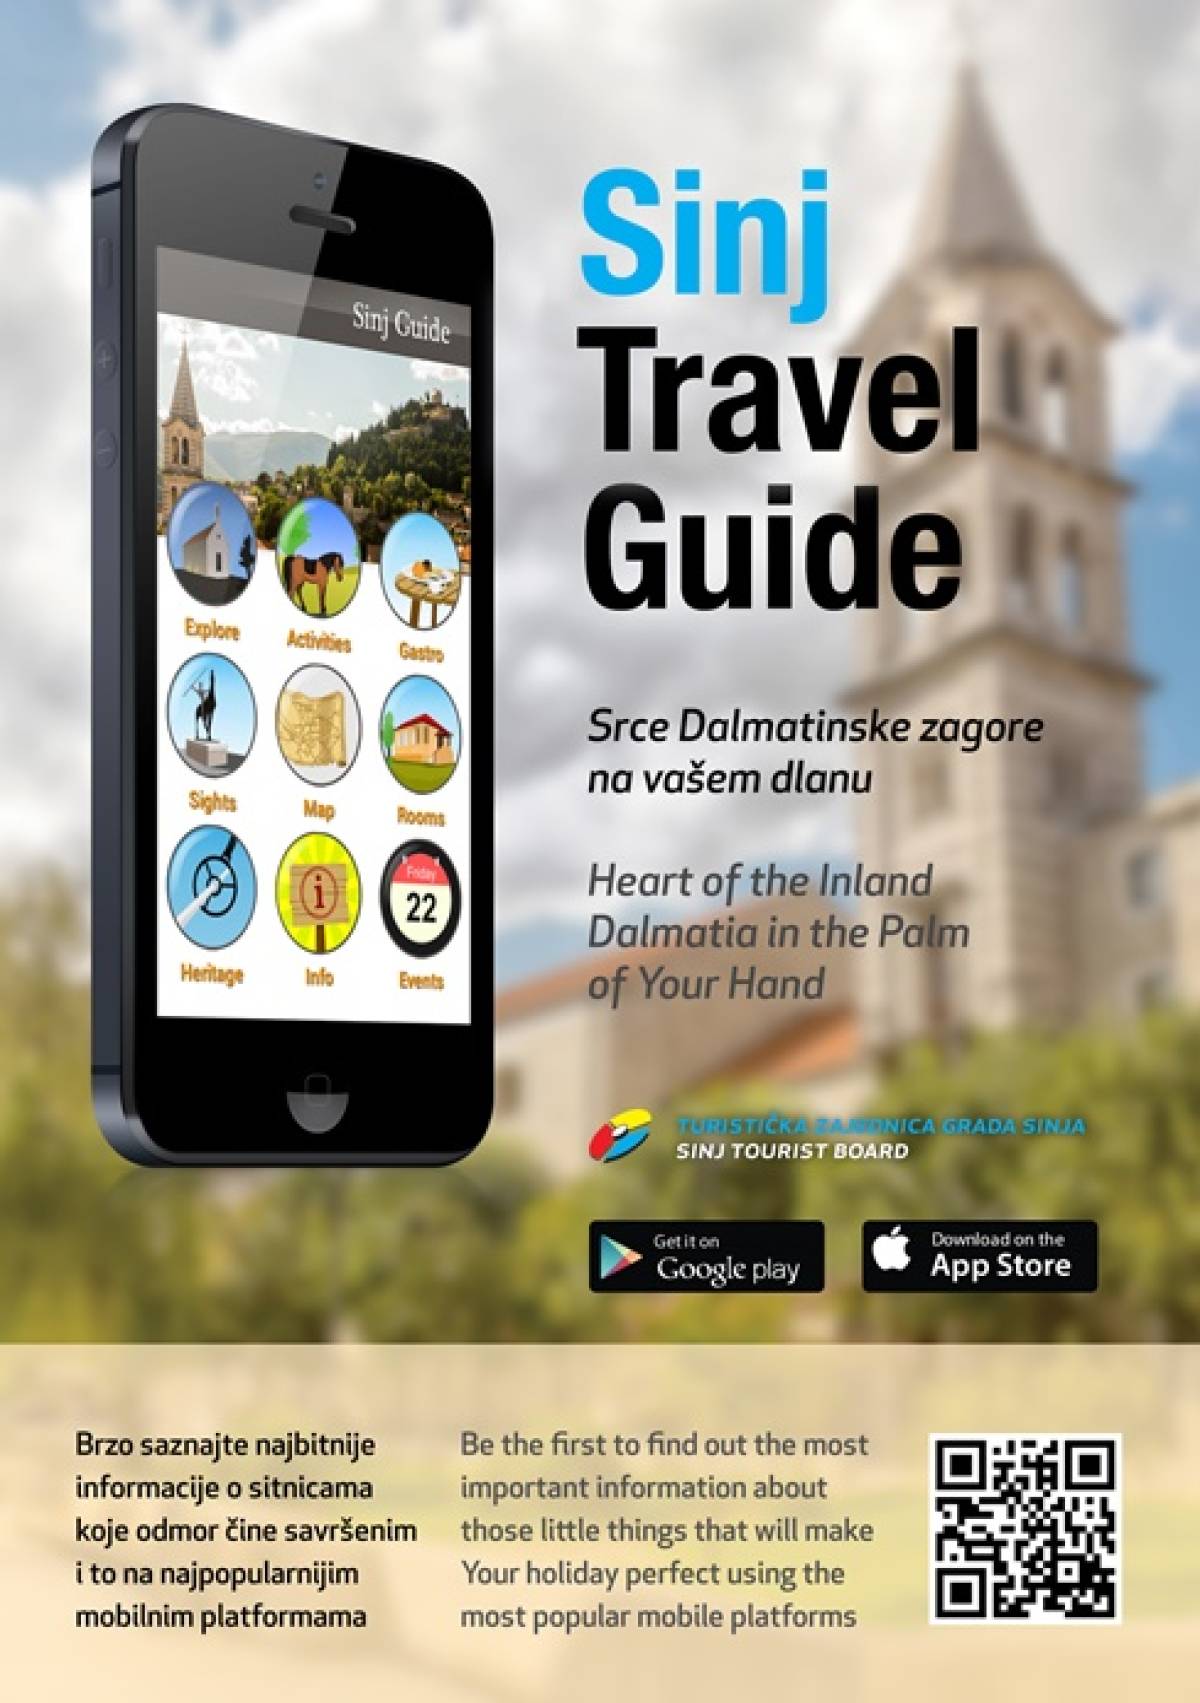 Turistička zajednica grada Sinja izradila mobilnu aplikaciju Sinj Tourist Guide